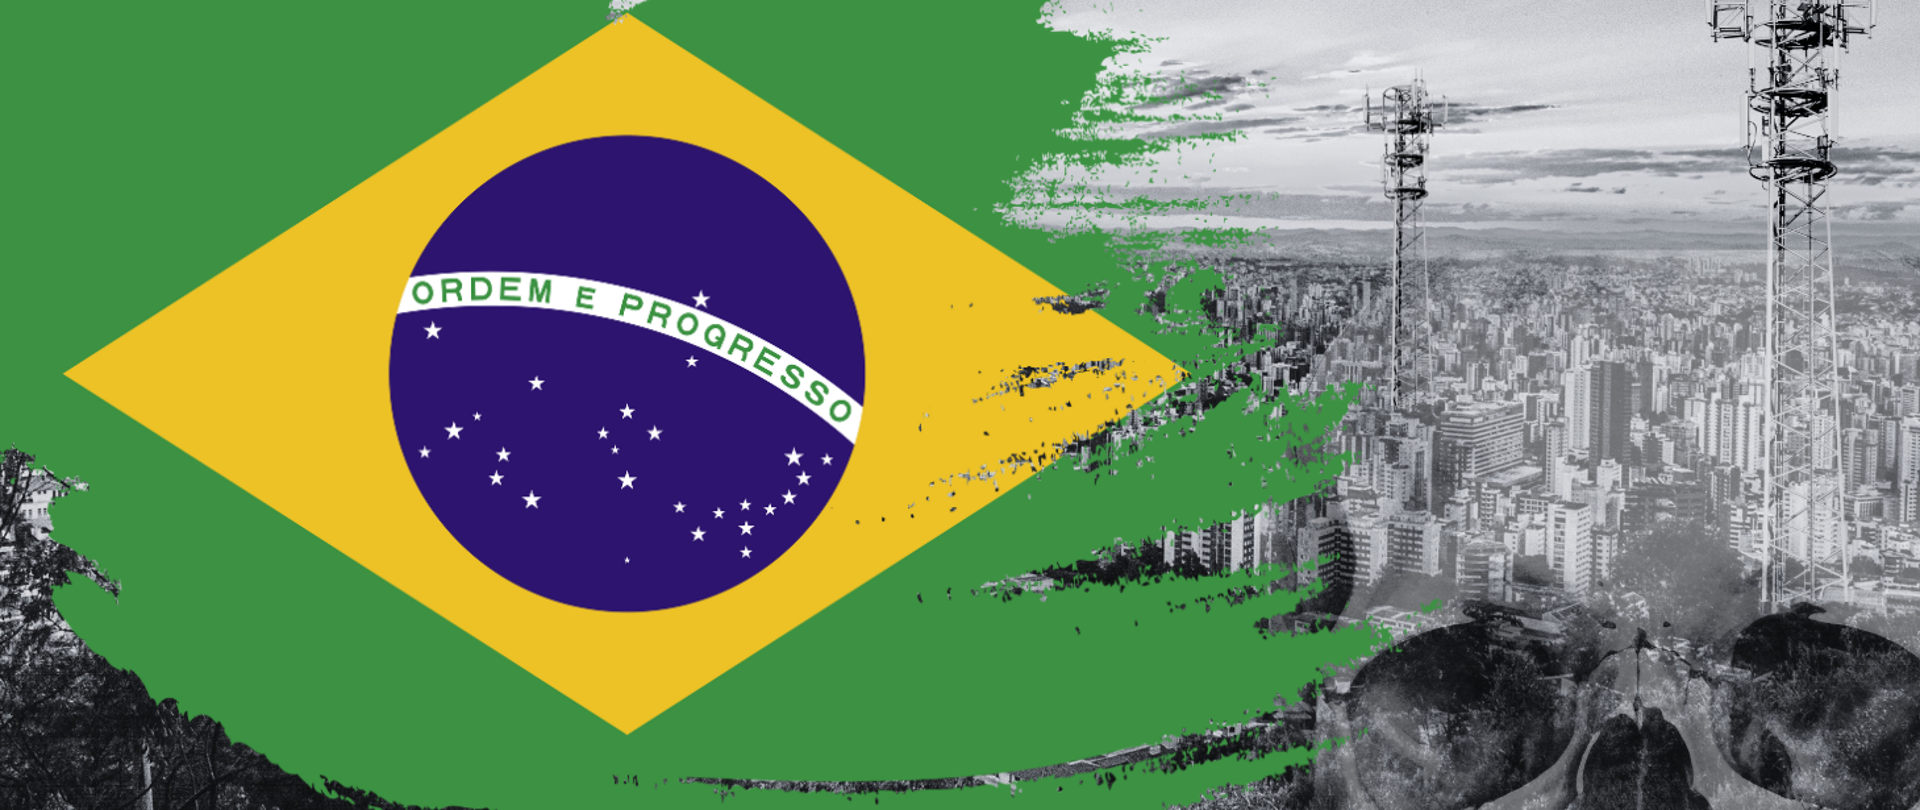 Badanie z Brazylii dowodzi, że maszty są szkodliwe? Fałsz